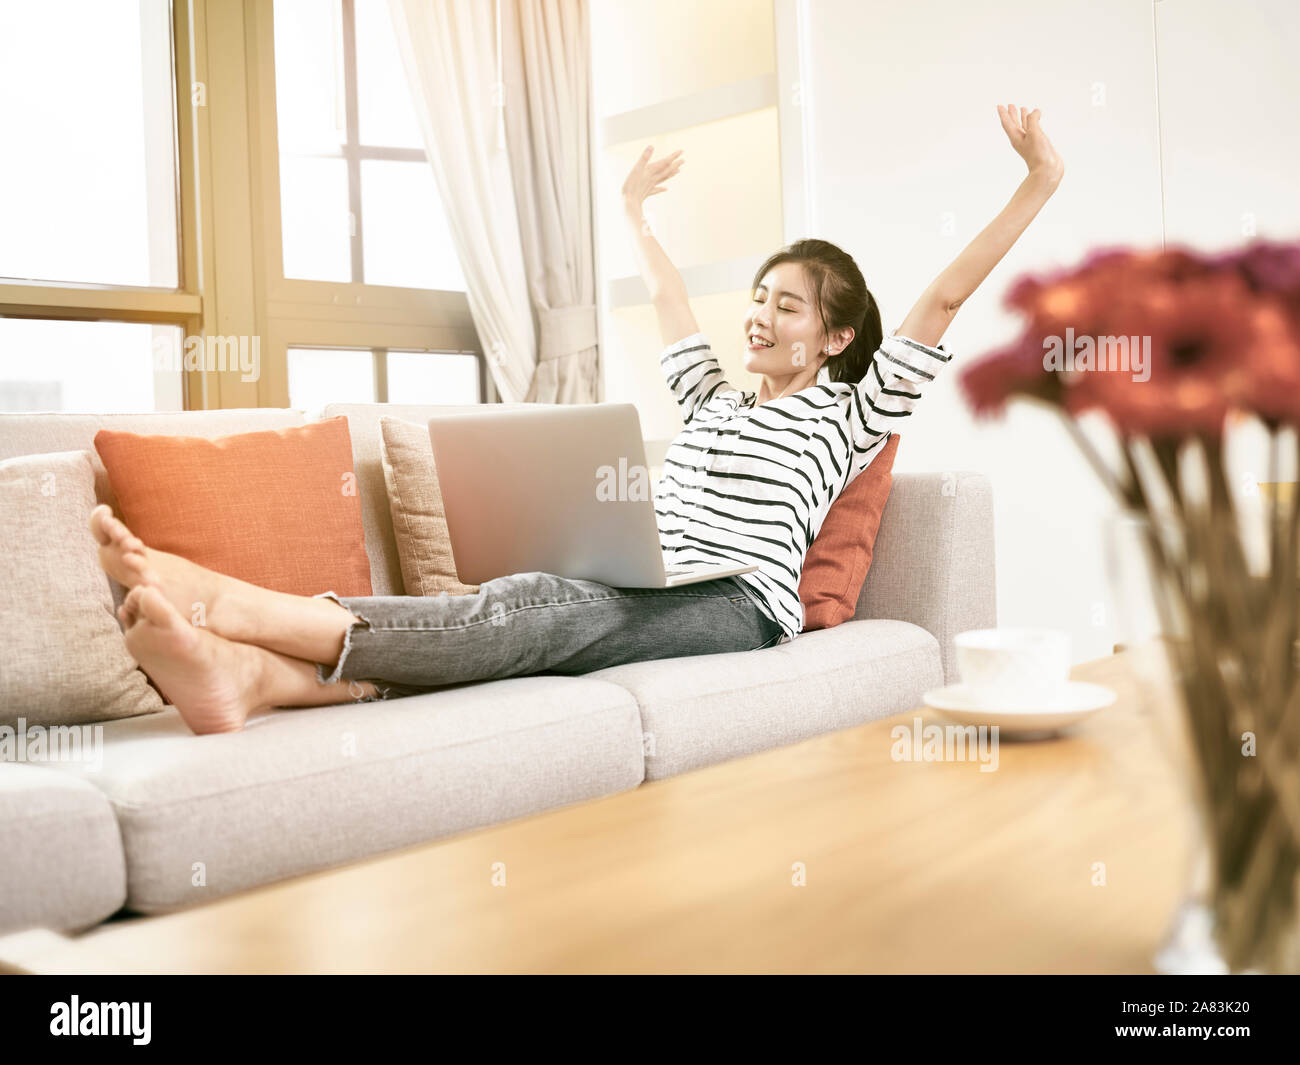 Schöne und glückliche junge asiatische Frau von zu Hause aus arbeiten Sittng auf mit laptop computer Couch, erhobenen Armen Erfolg feiern. Stockfoto